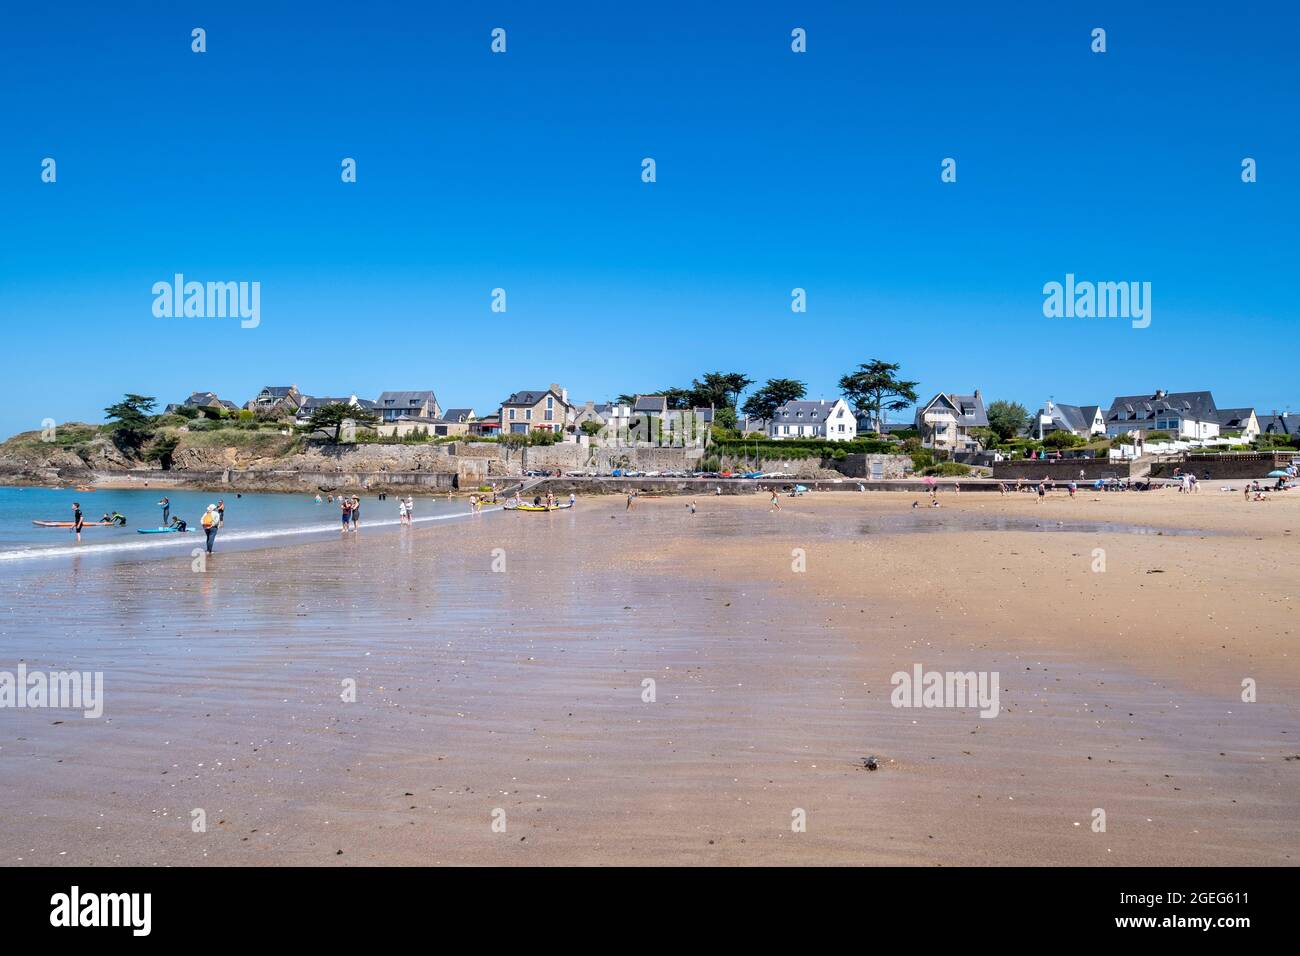 Saint Malo (Bretagna, Francia nord-occidentale): Panoramica della spiaggia “plage du Pont” con case e ville lungo il lungomare. Turisti sulla spiaggia a Foto Stock